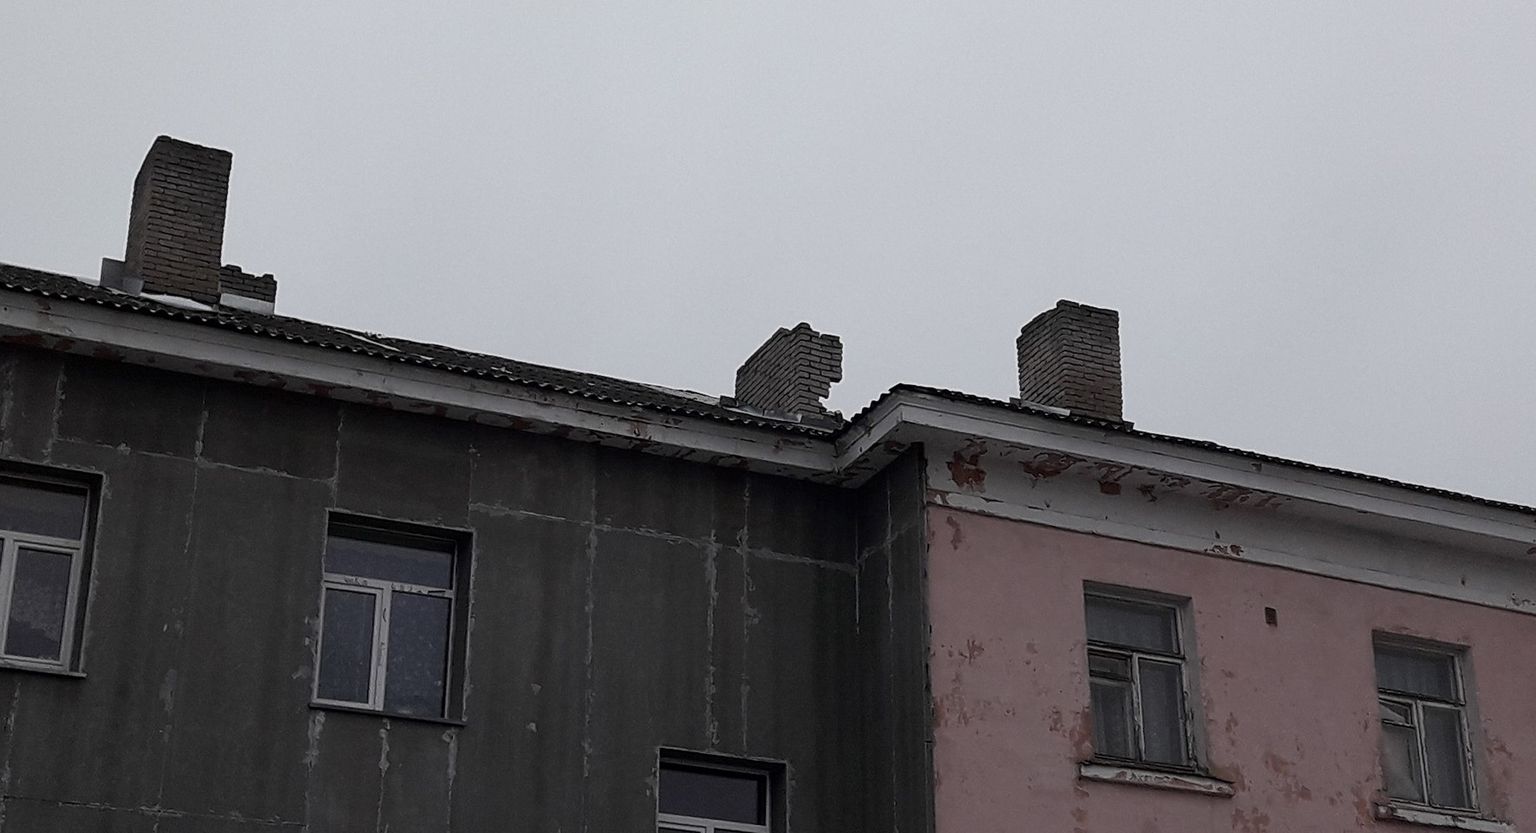 Разрушающаяся дымовая труба на крыше многоквартирного дома в Кивиыли стала опасной для пешеходов внизу.